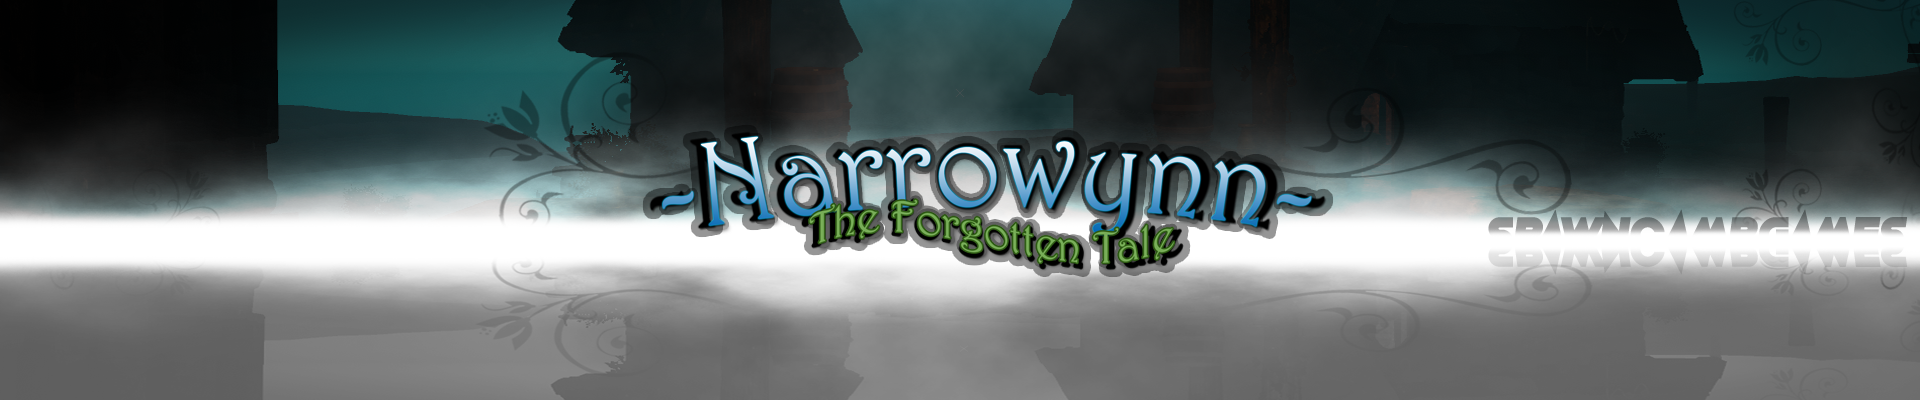 Narrowynn - The Forgotten Tale